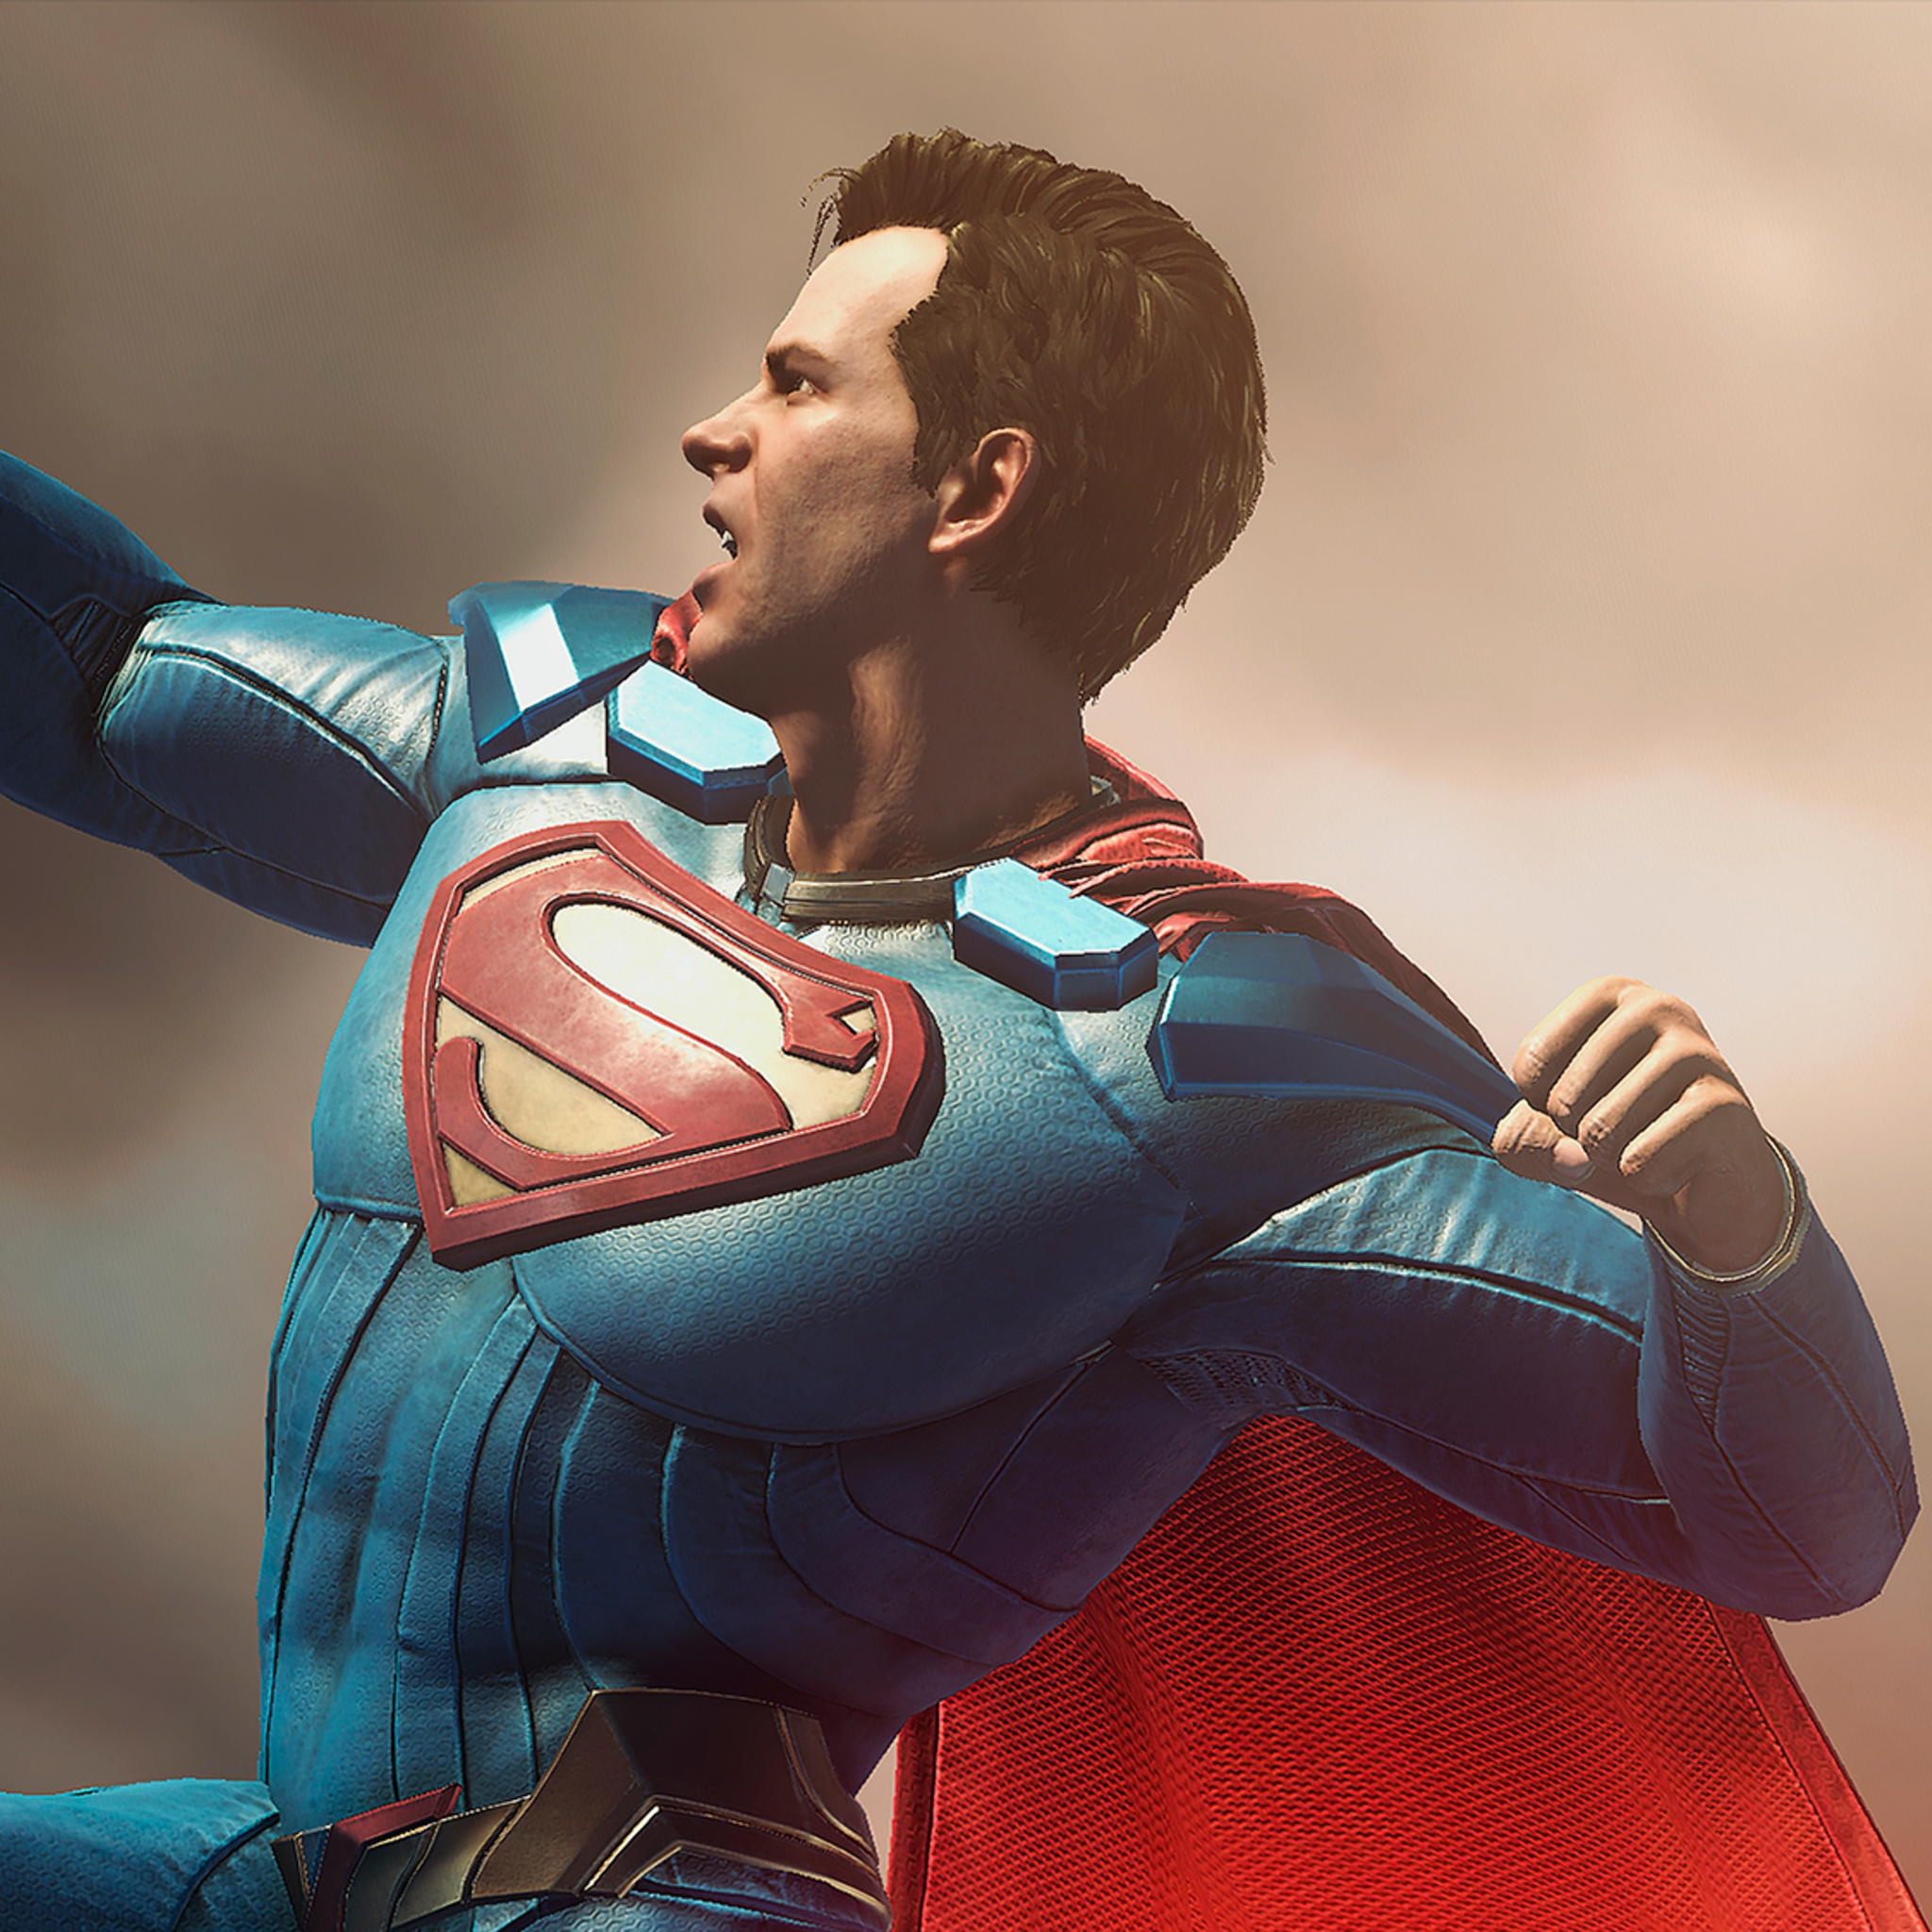 Super men games. Супермен Инджастис 2. Супермен Injustice. Инджастис 1 Супермен. Супермен Инджастис 2 арт.